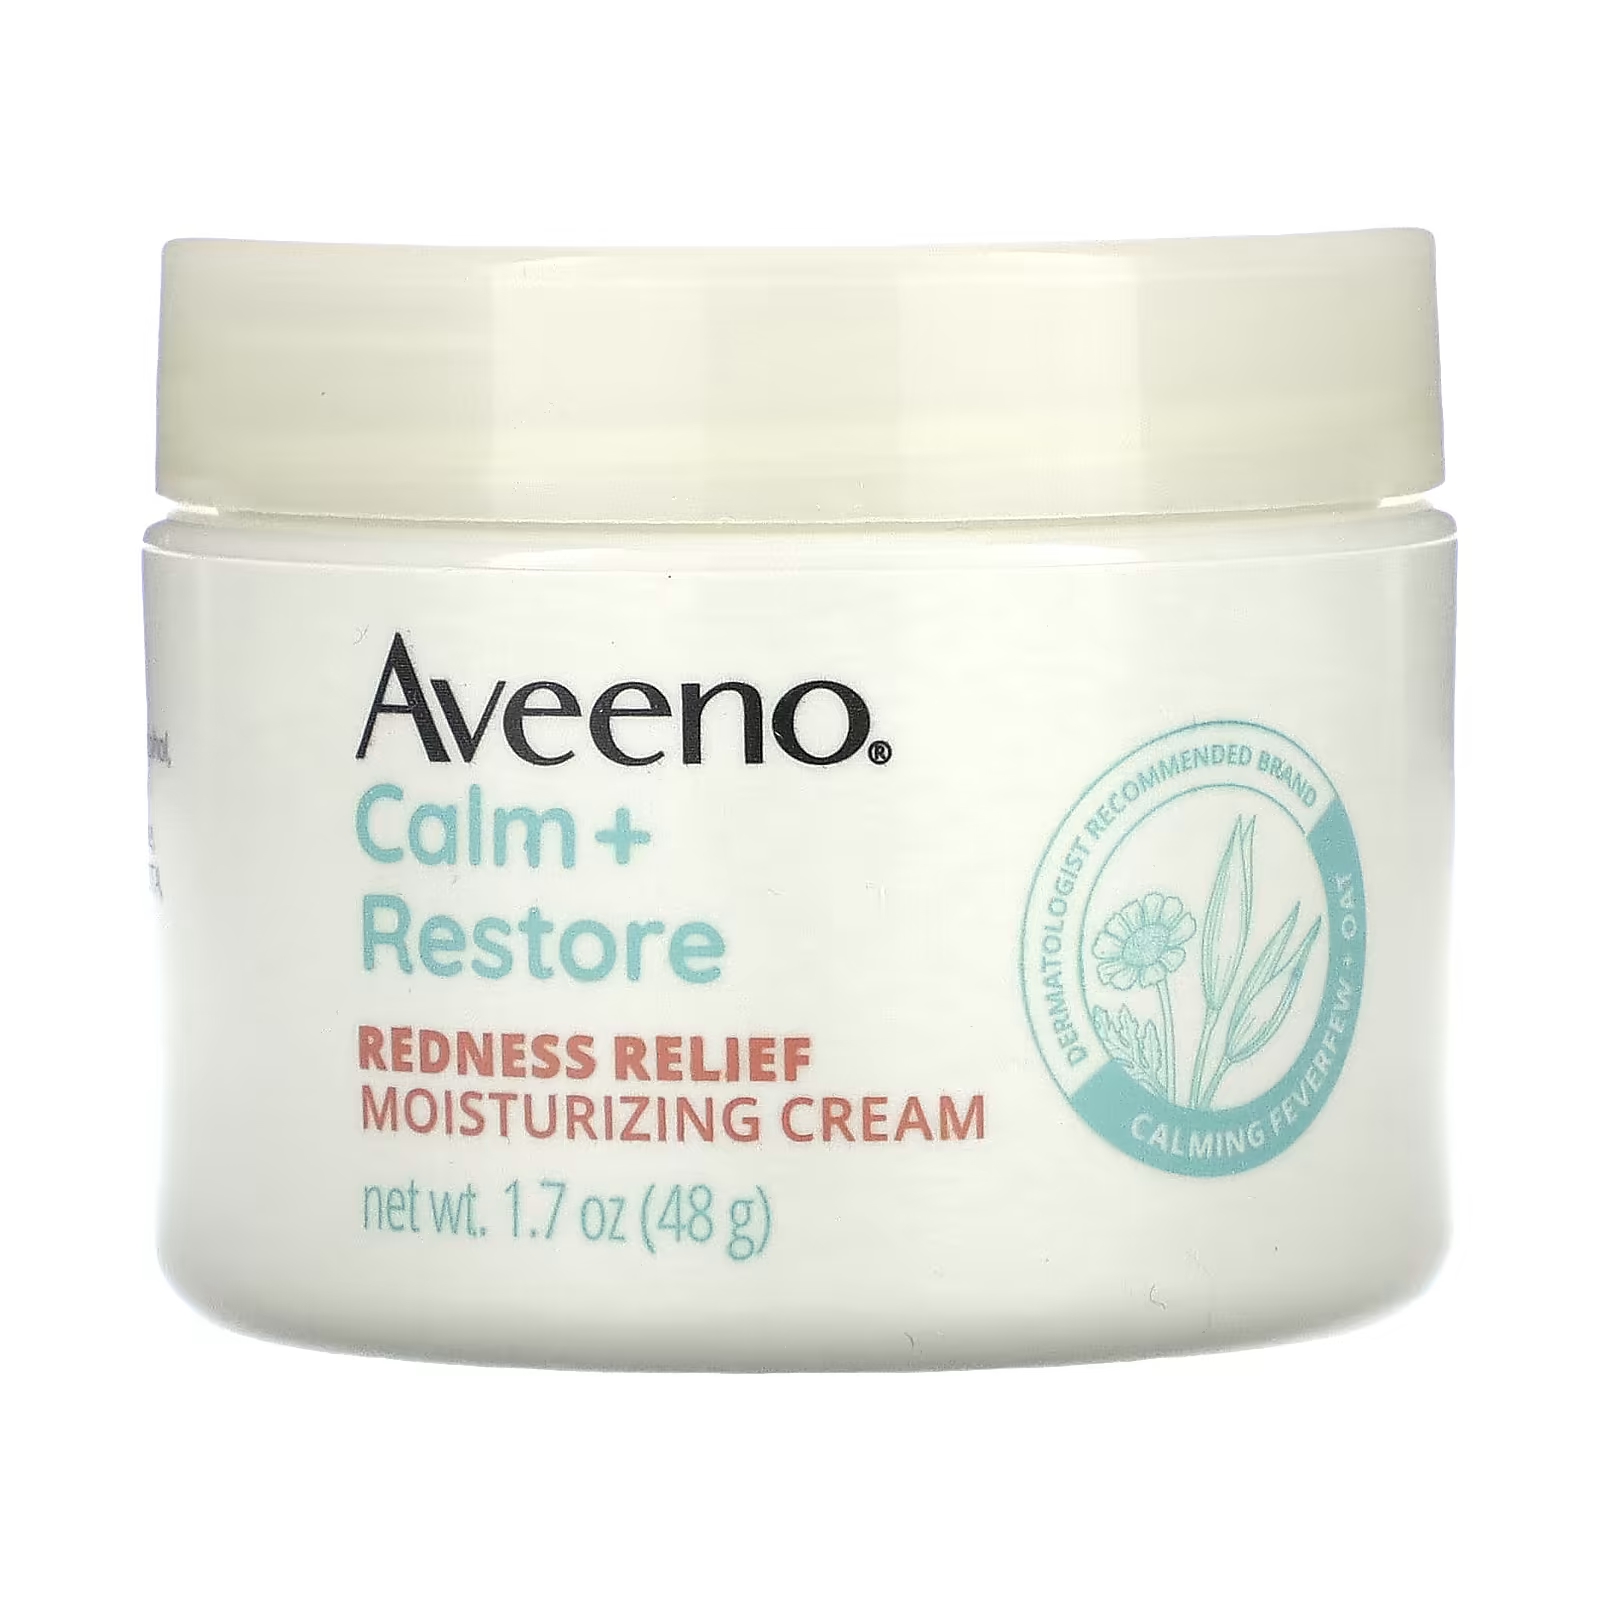 Aveeno Calm + Restore Увлажняющий крем для снятия покраснений для чувствительной кожи, без ароматизаторов, 1,7 унции (48 г) aveeno calm restore увлажняющий гель крем с овсом без отдушек 48 г 1 7 унции